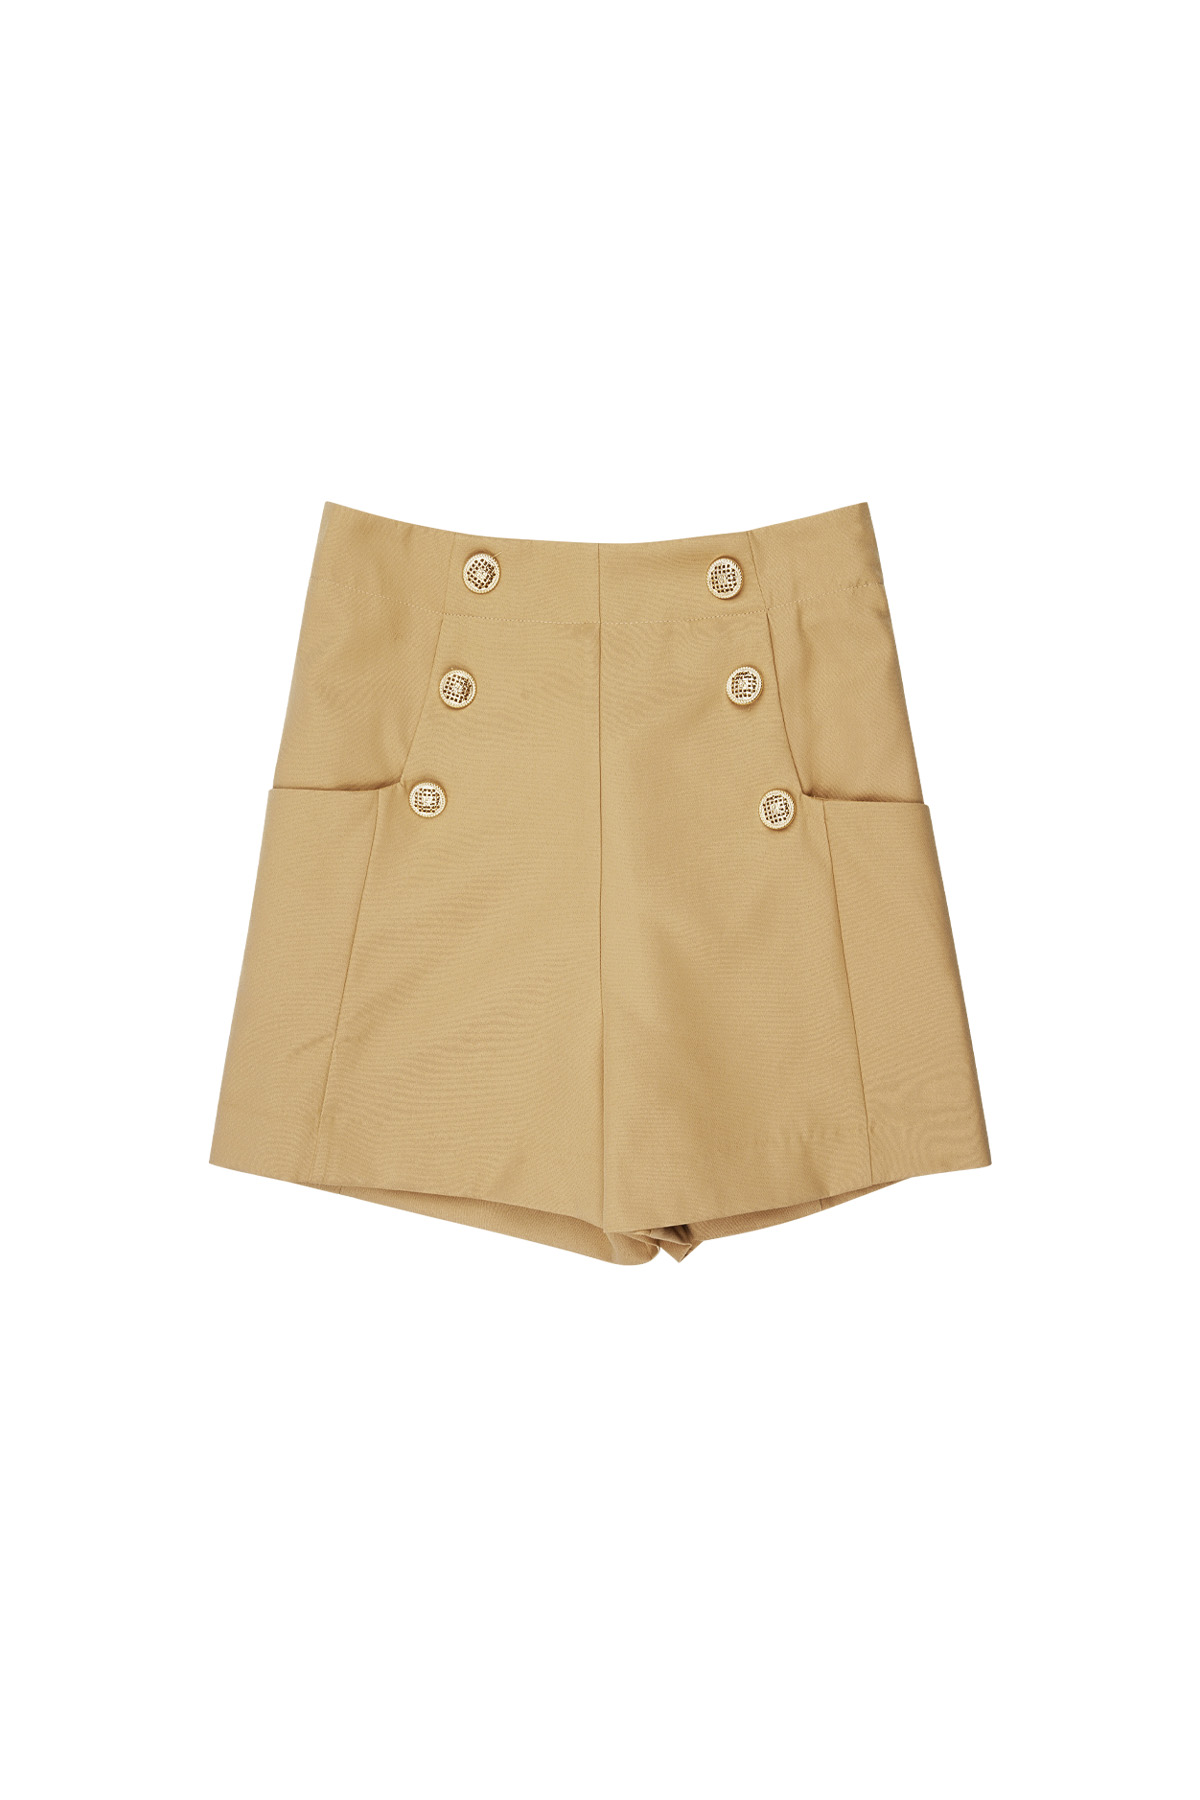 Pantalón corto con botones dorados - camel